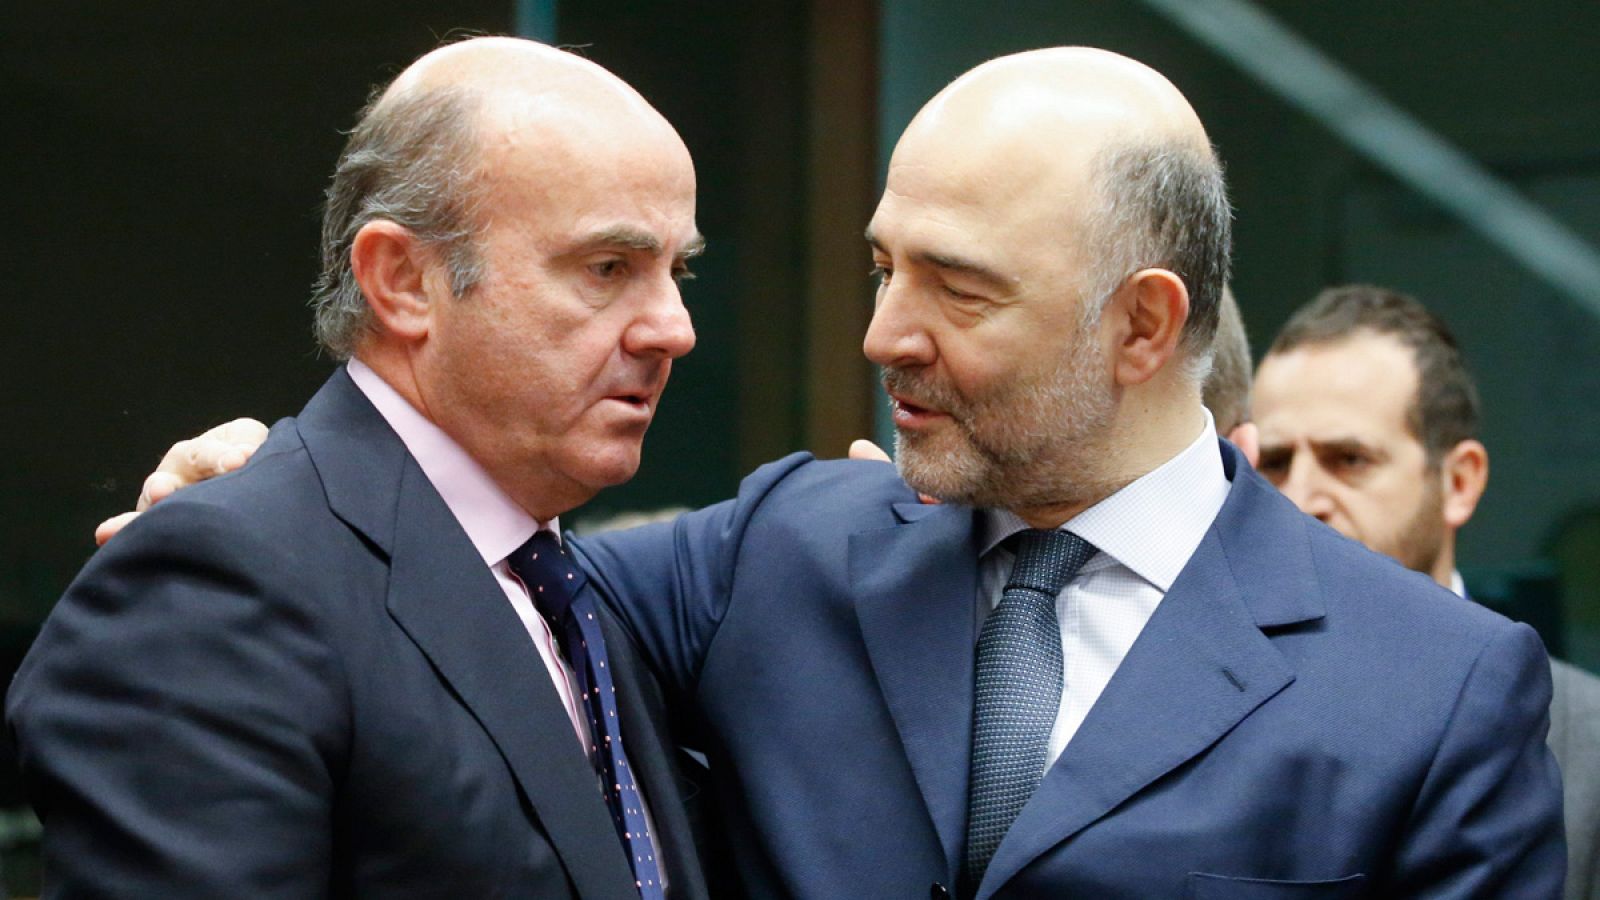 El ministro español de Economía, Luis de Guindos, conversa con el comisario europeo de Asuntos Económicos, Pierre Moscovici, durante una reunión de los responsables de Economía y Finanzas de la zona euro